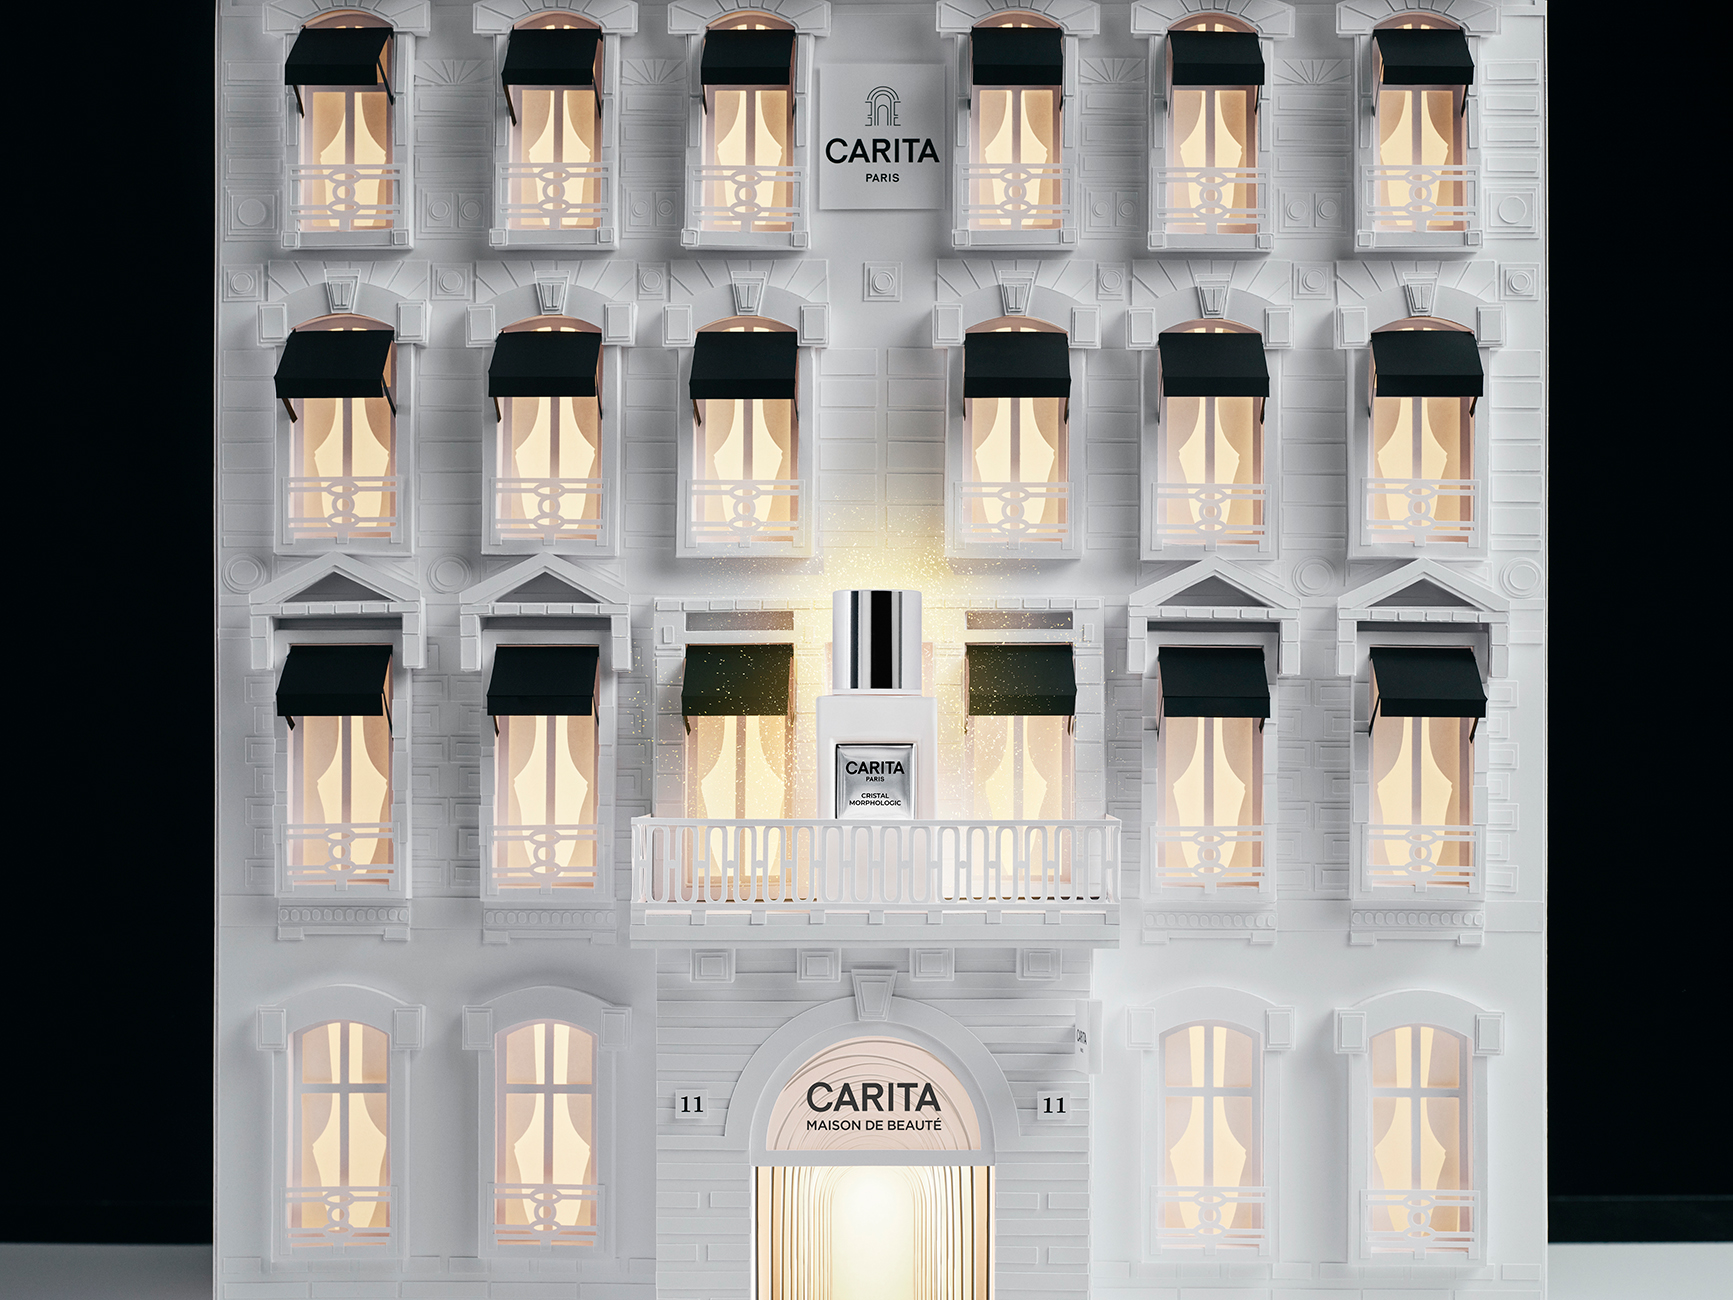 Carita studio design Maud Vantours set design Noël Paris